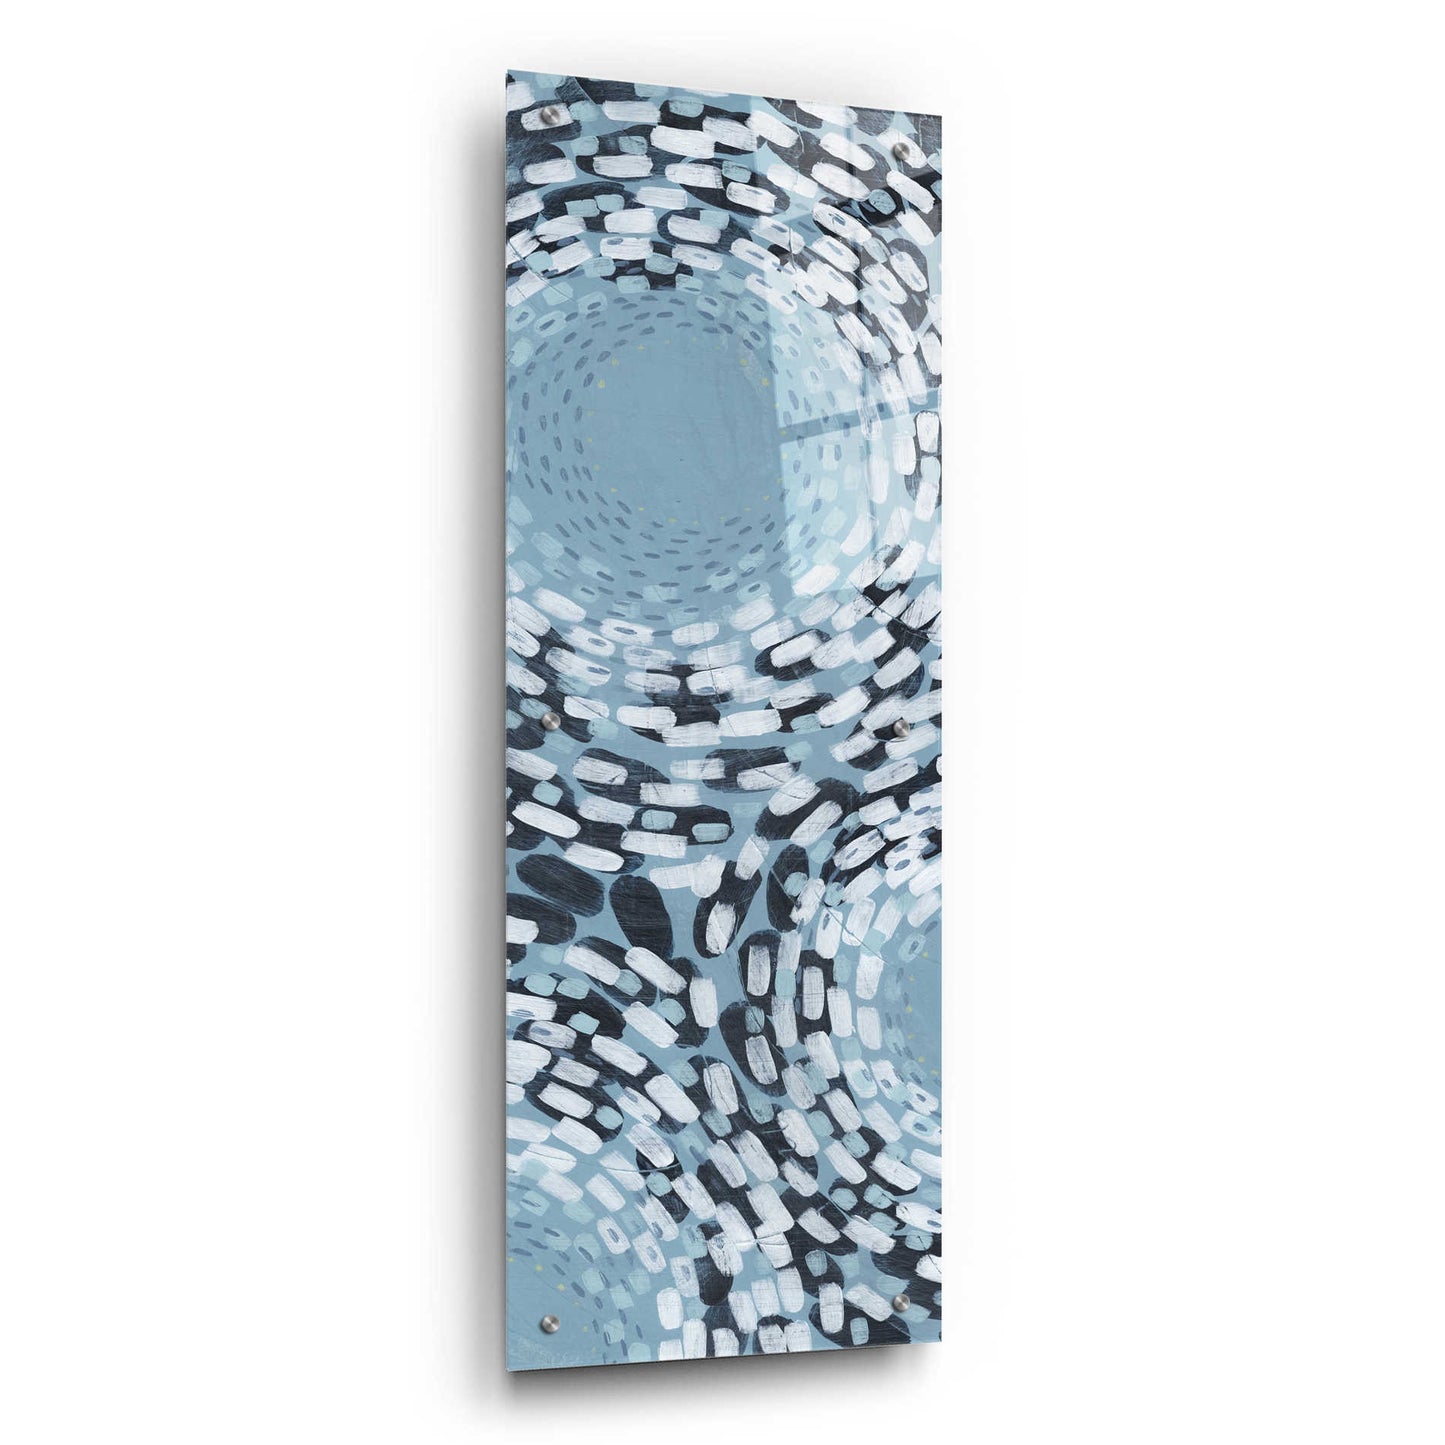 Epic Art 'Whirlpool II' by Grace Popp,Acrylic Glass Wall Art,16x48